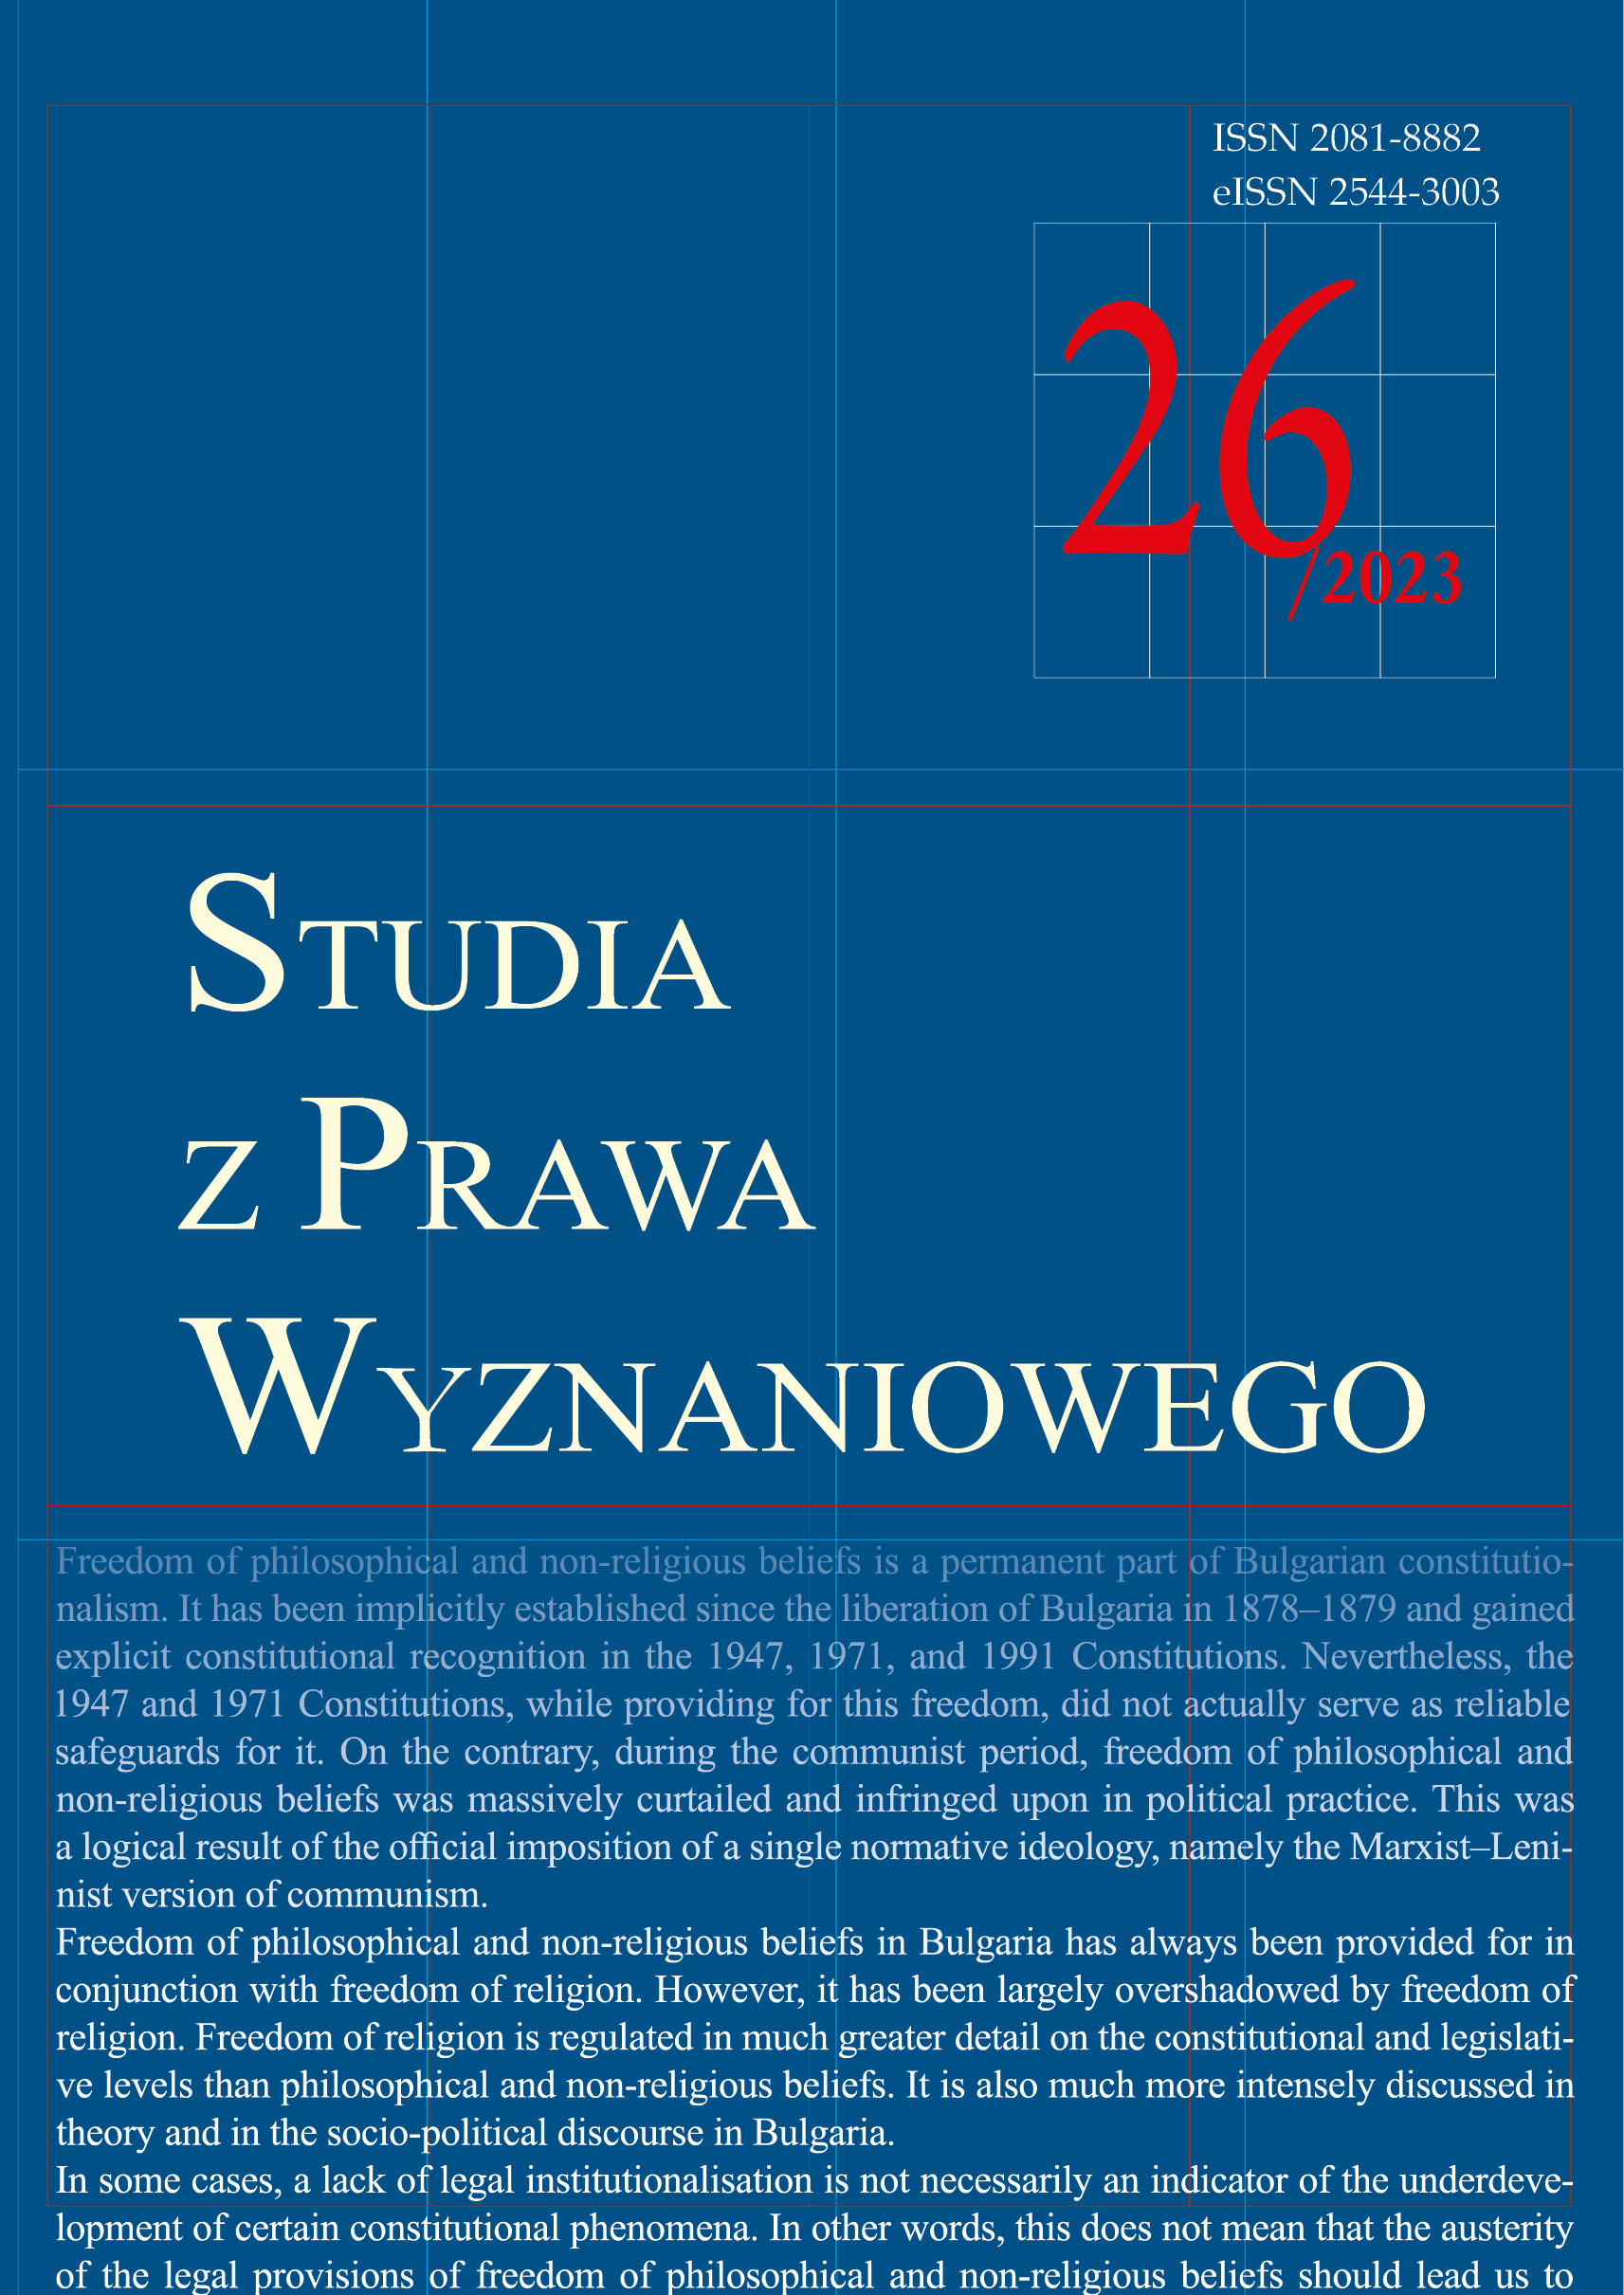 Wolność tworzenia związków wyznaniowych w Polsce – przypadek niezależnych gmin wyznaniowych żydowskich